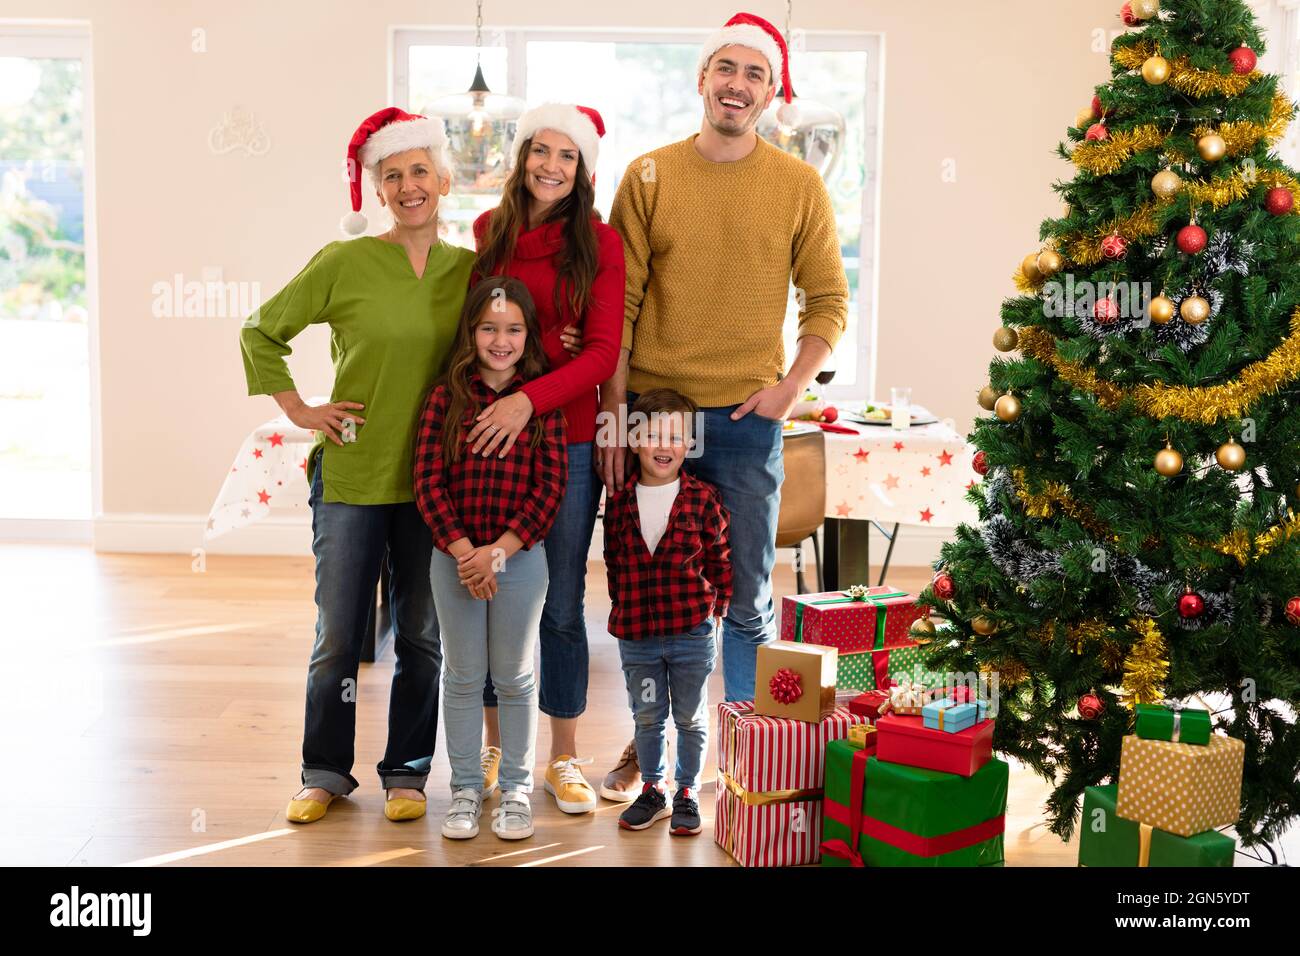 Glückliche, mehrfache Generation kaukasische Familie, die Foto mit weihnachtsbaum macht Stockfoto